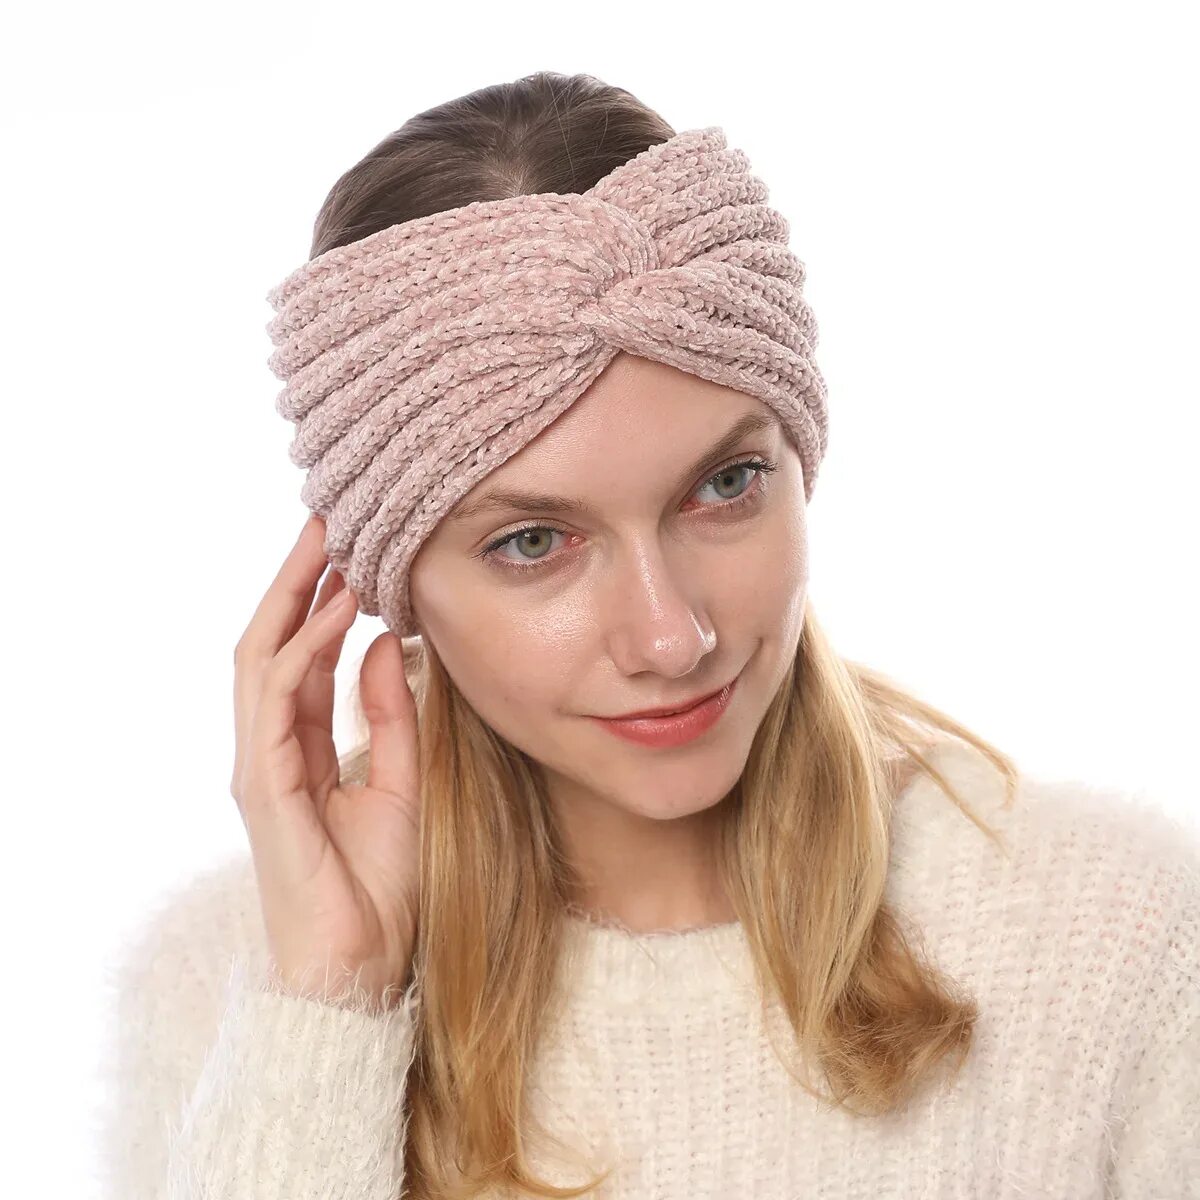 Повязка на голову вязаная. Вязаные повязки на голову для женщин. Повязка на голову вязаная розовая. Красивые повязки на голову спицами.